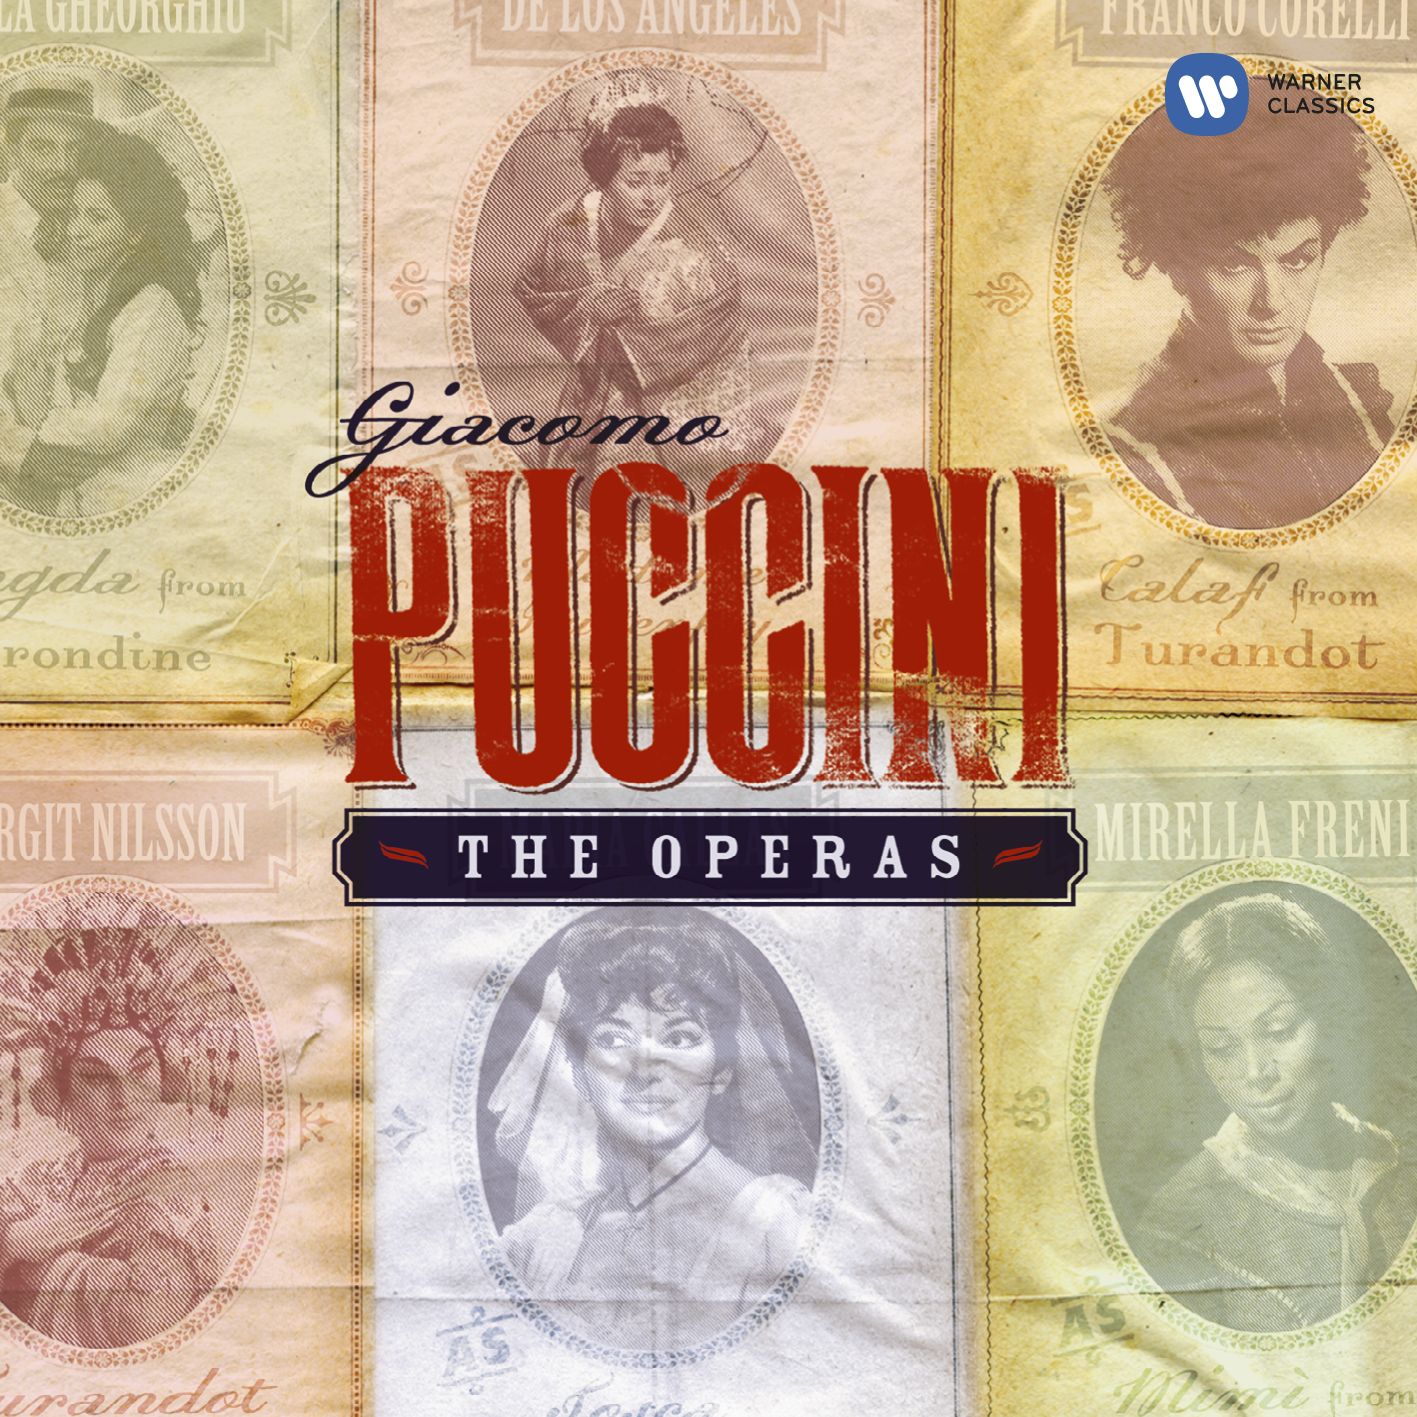 Turandot (libretto by Giuseppe Adami & Renato Simoni, after Carlo Gozzi) (1988 Digital Remaster), ACT 1: Fermo! che fai? T'arres